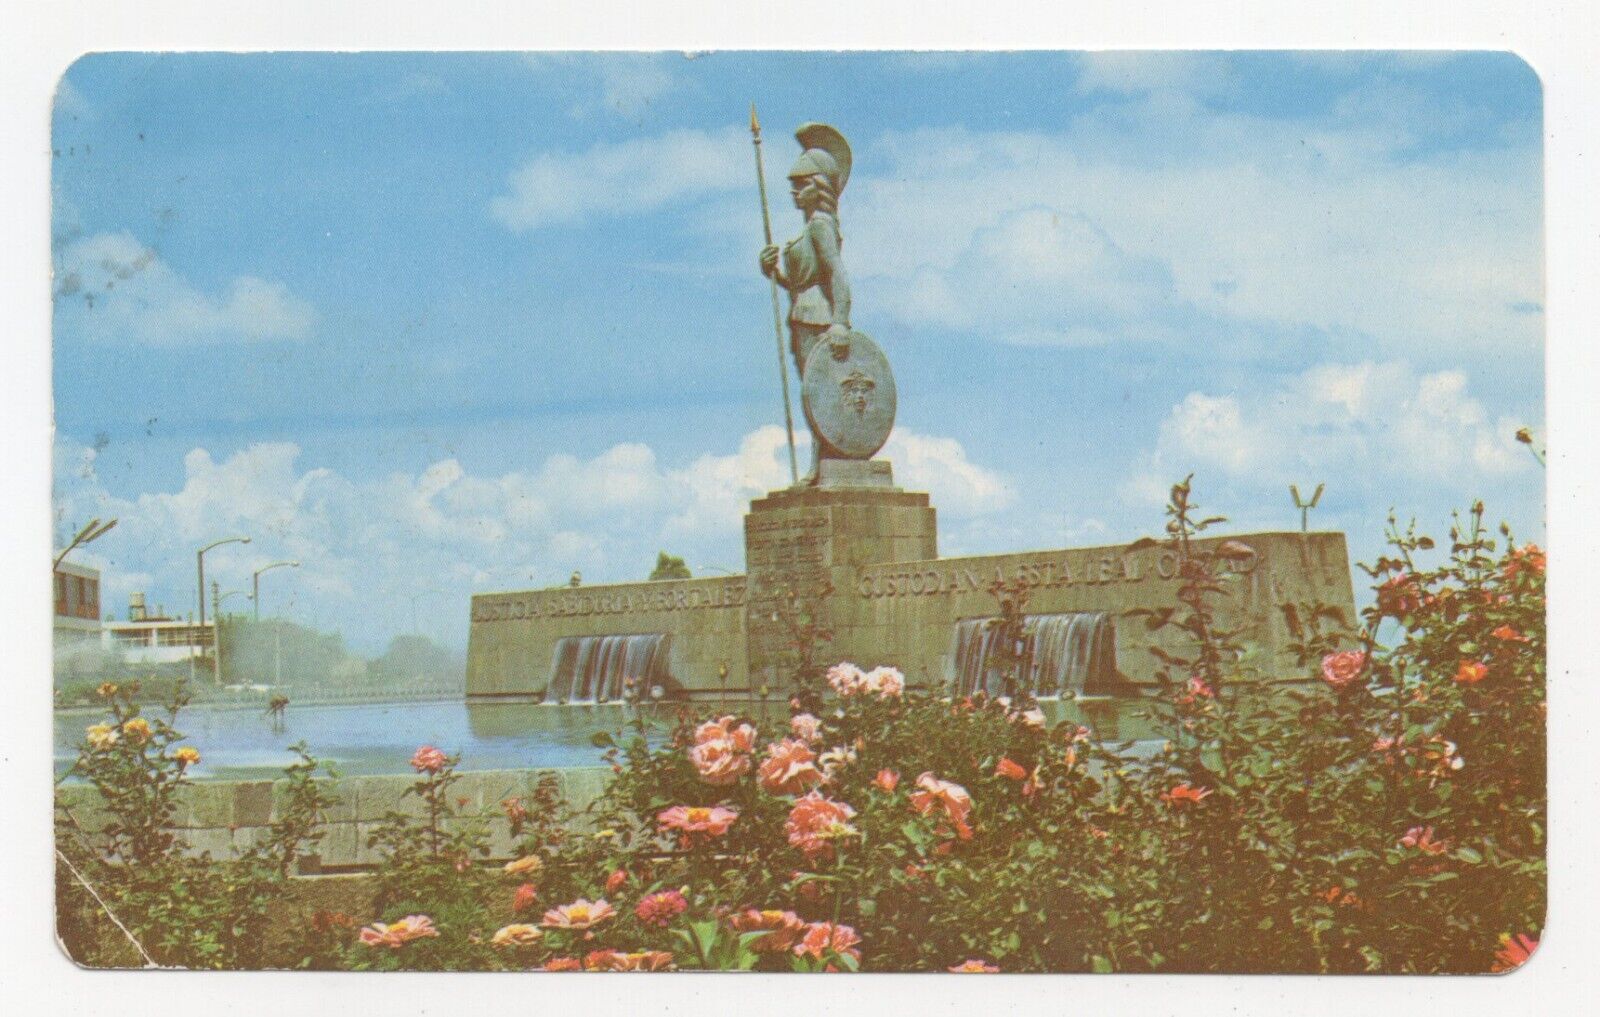 Statue of Minerva Guadalajara Mexico Chrome Posted Postcard